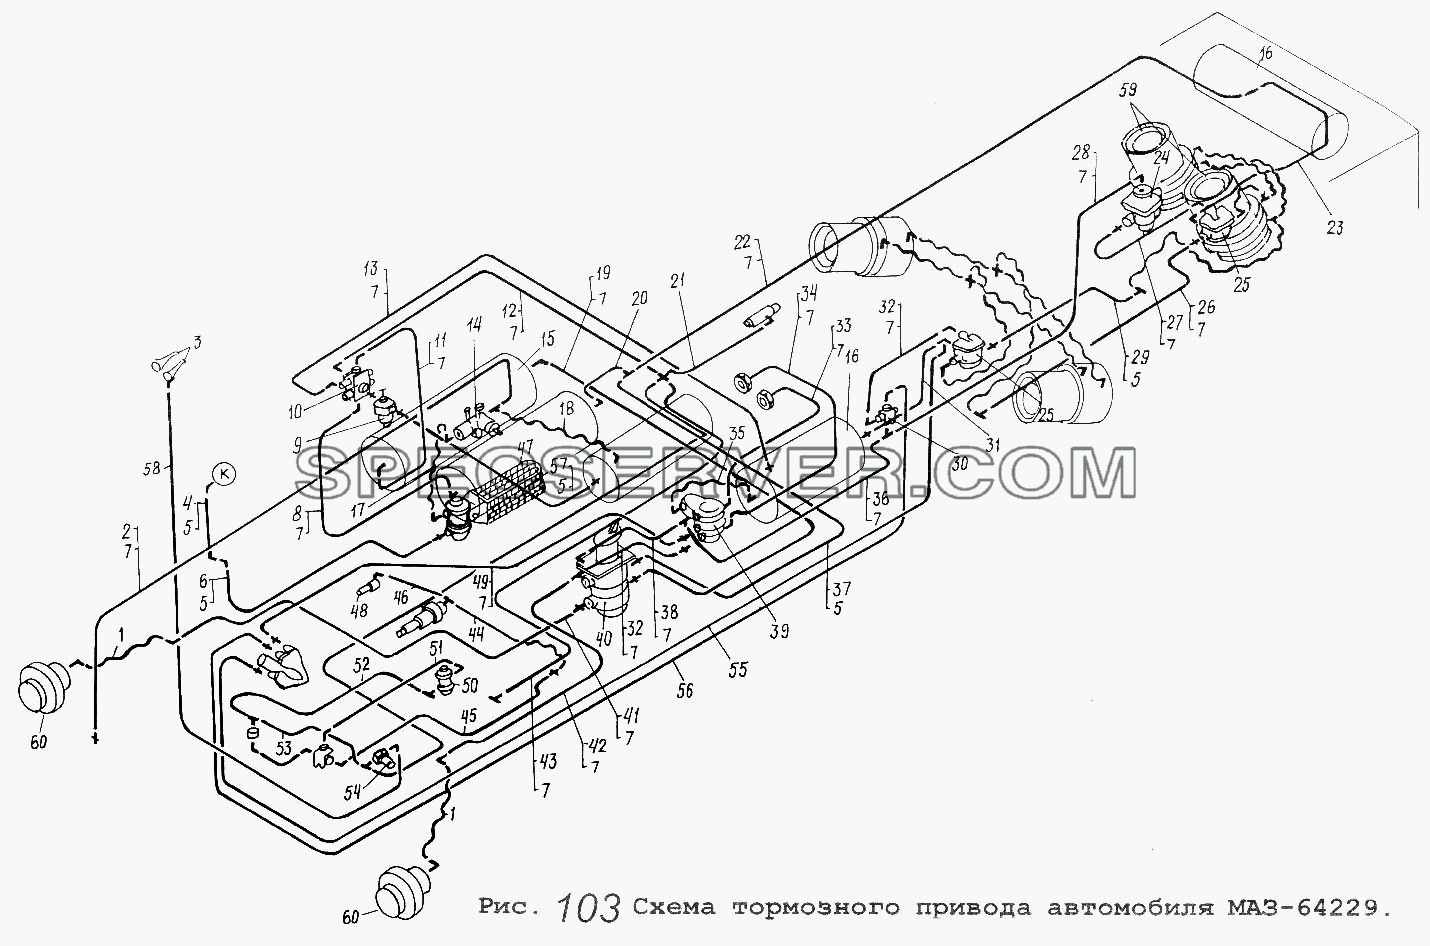 Схема тормозного привода автомобиля МАЗ-64229 для МАЗ-53371 (список запасных частей)